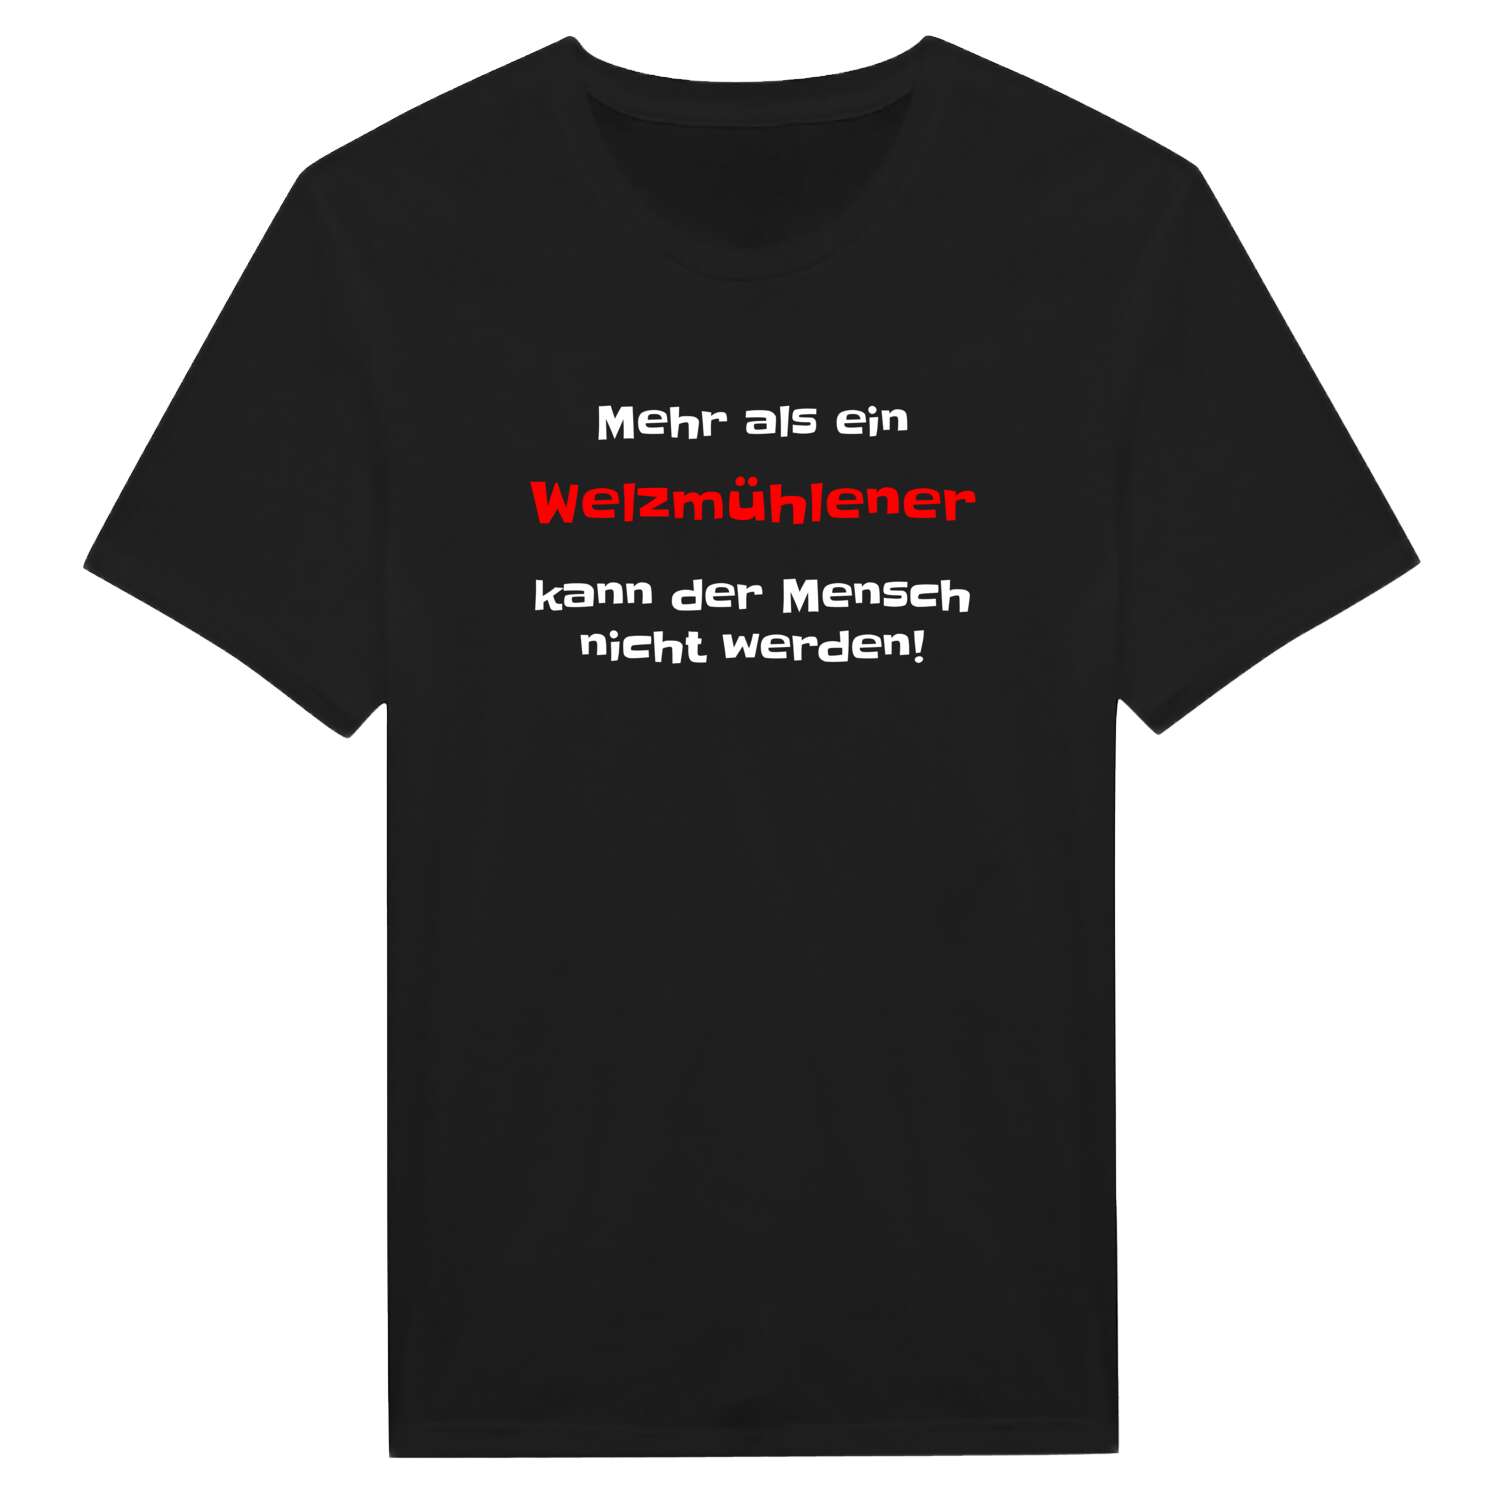 Welzmühle T-Shirt »Mehr als ein«